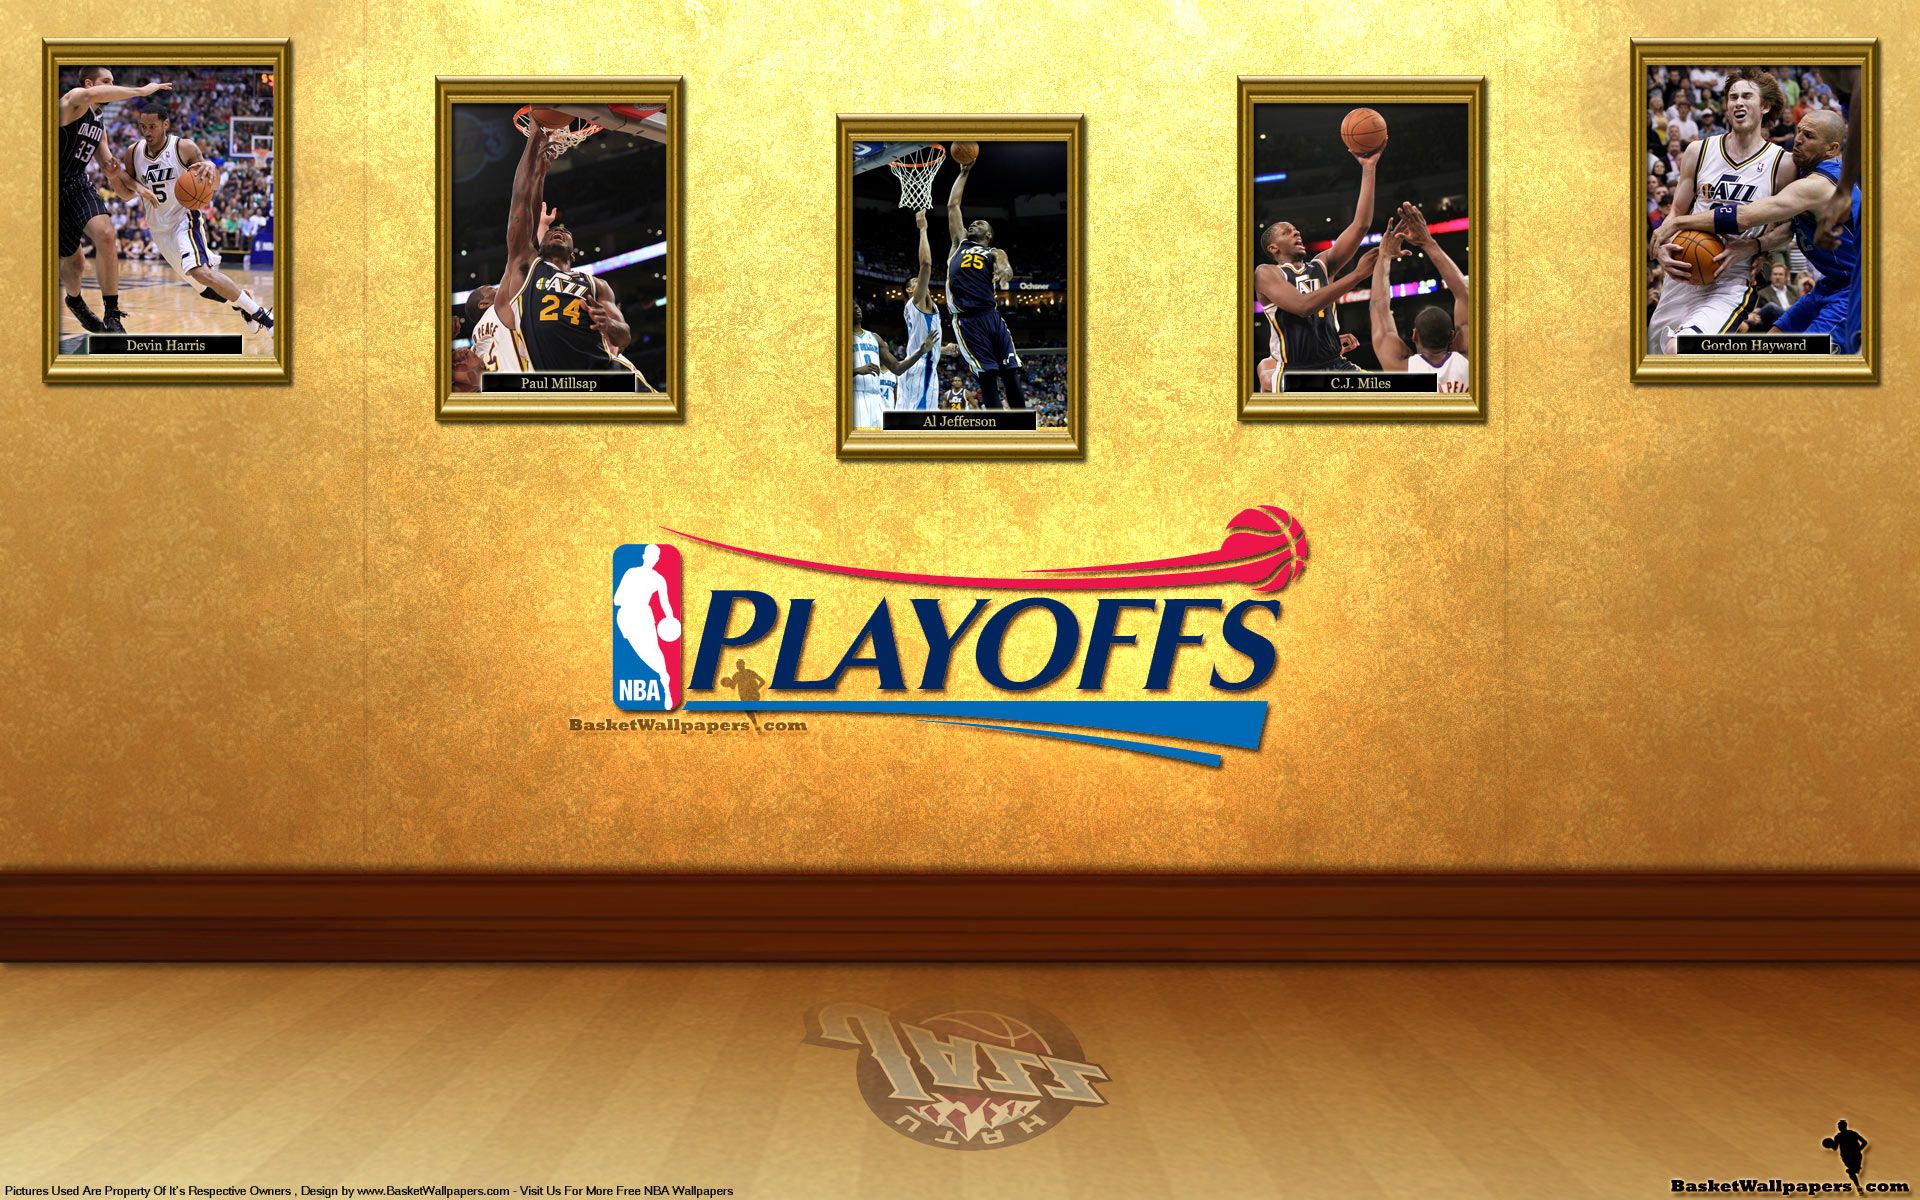 Utah Jazz See You In Playoffs 2012 Wallpaper | Basketball ...